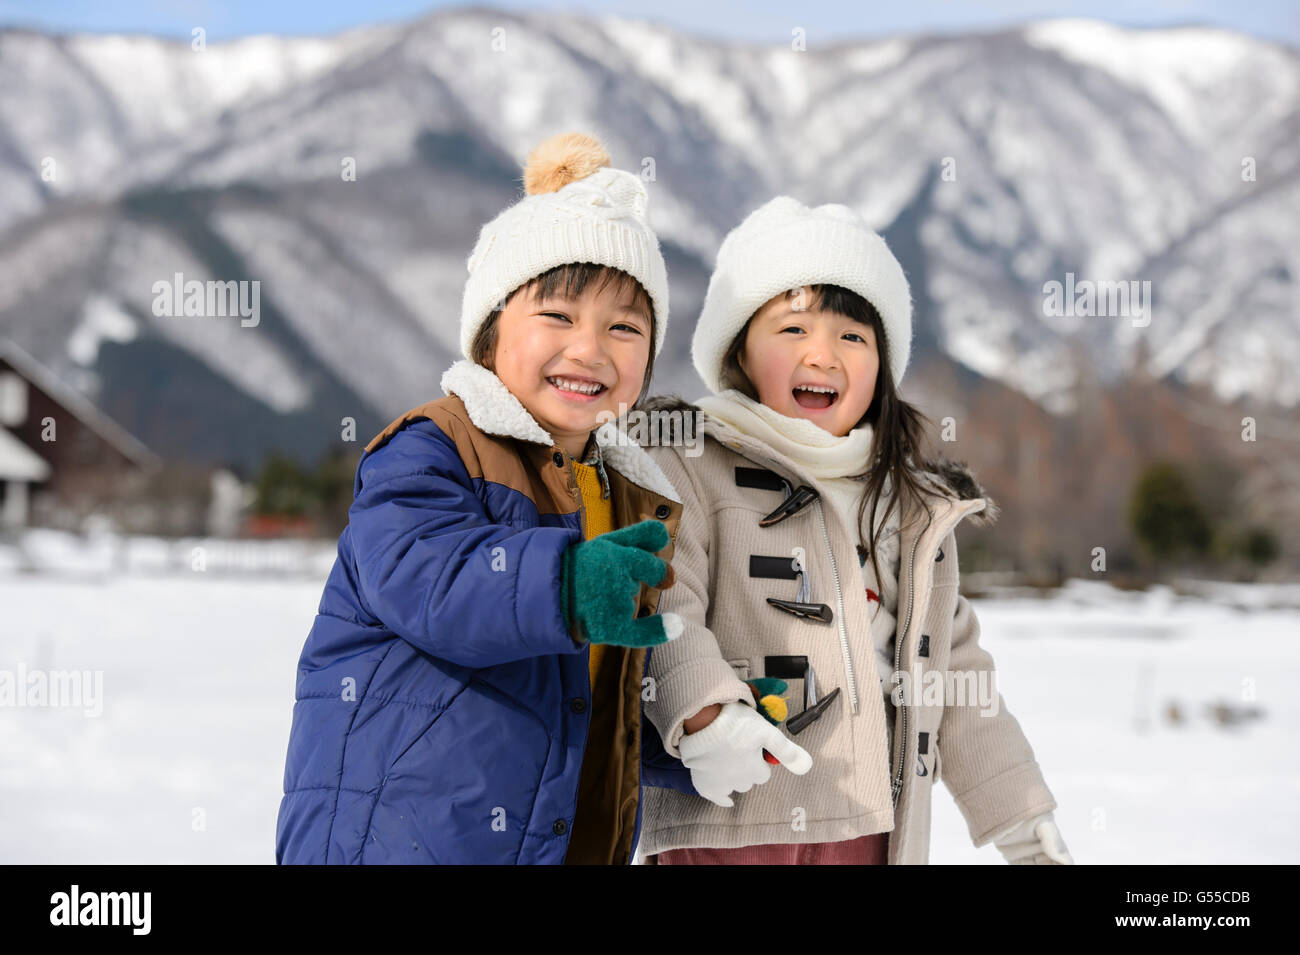 Les enfants jouant dans la neige Banque D'Images